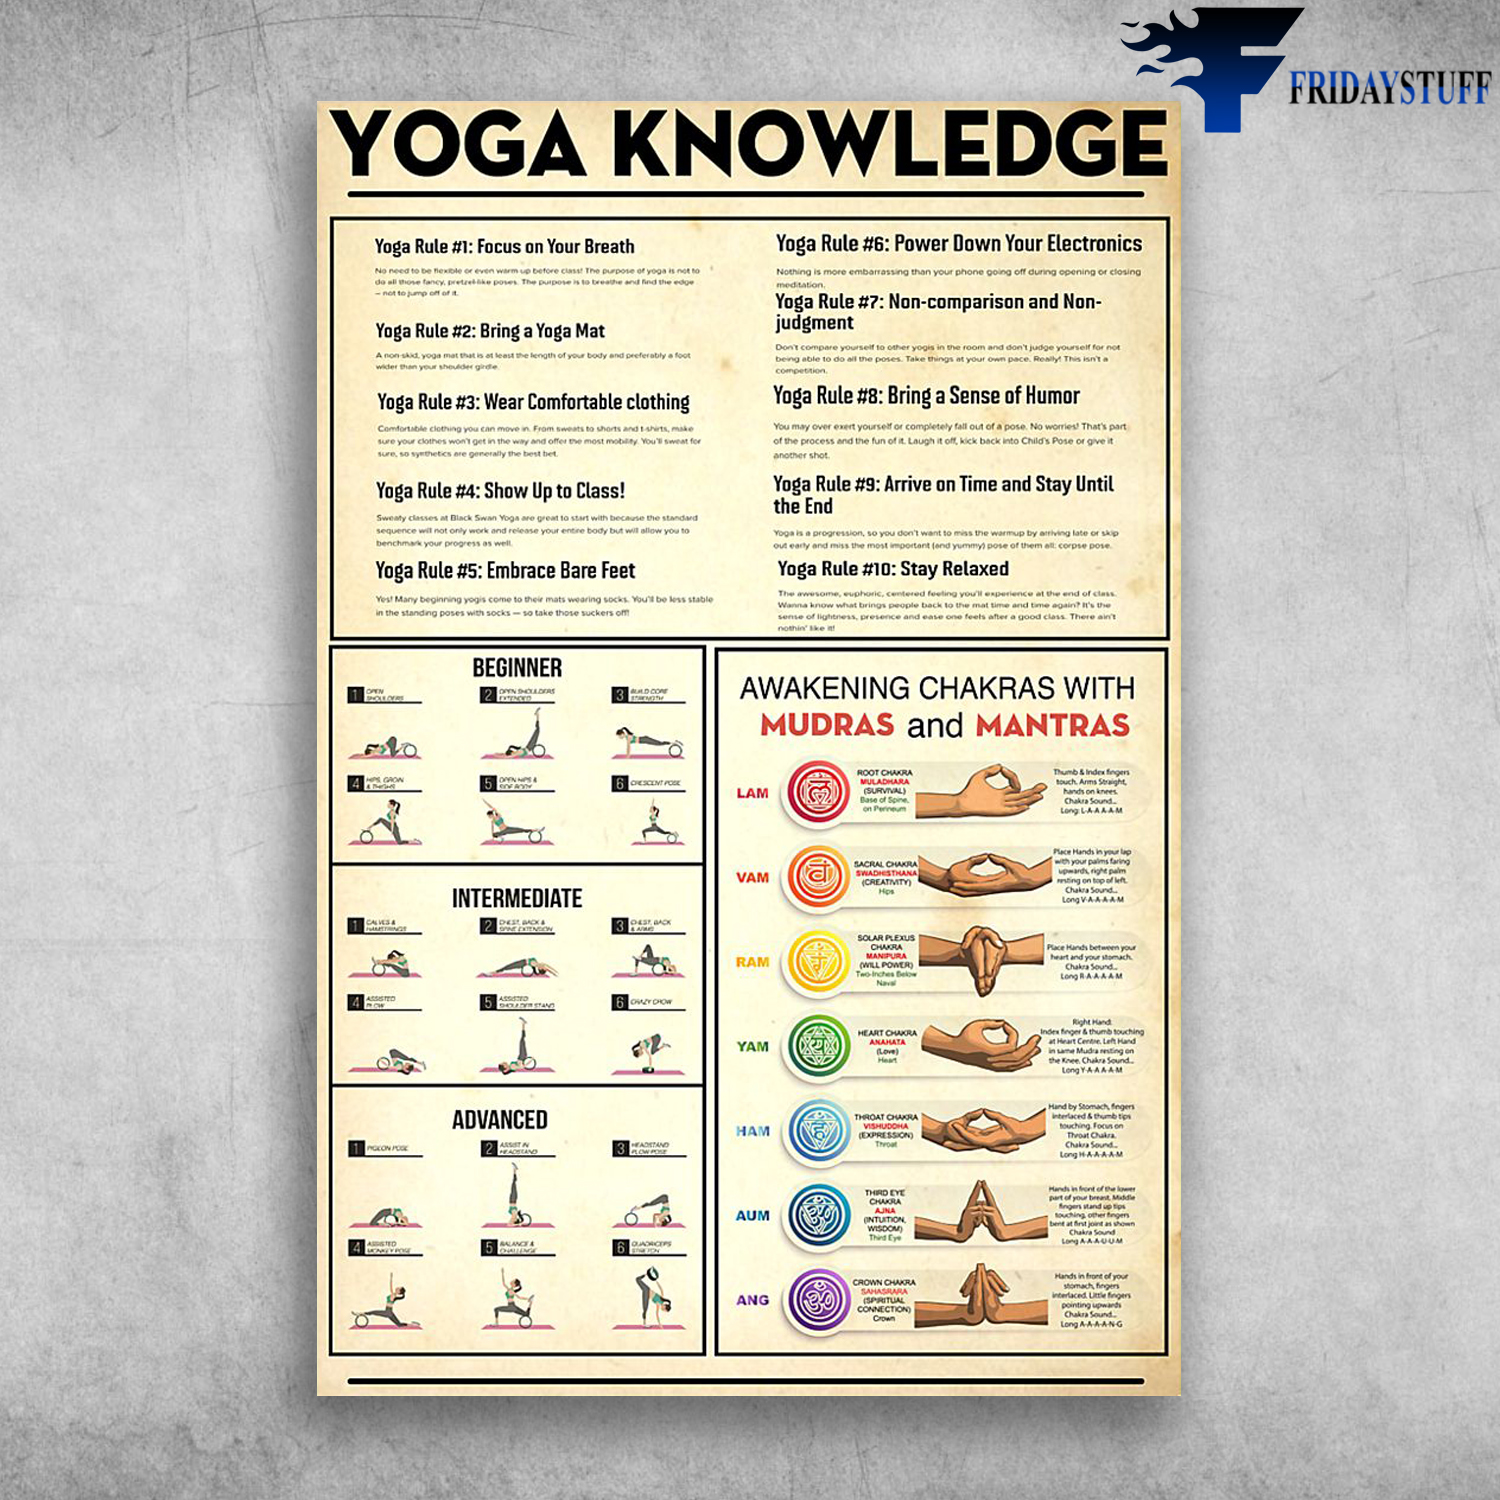 Yoga Knowledge Awakening Chakras With Mudras And Mantras